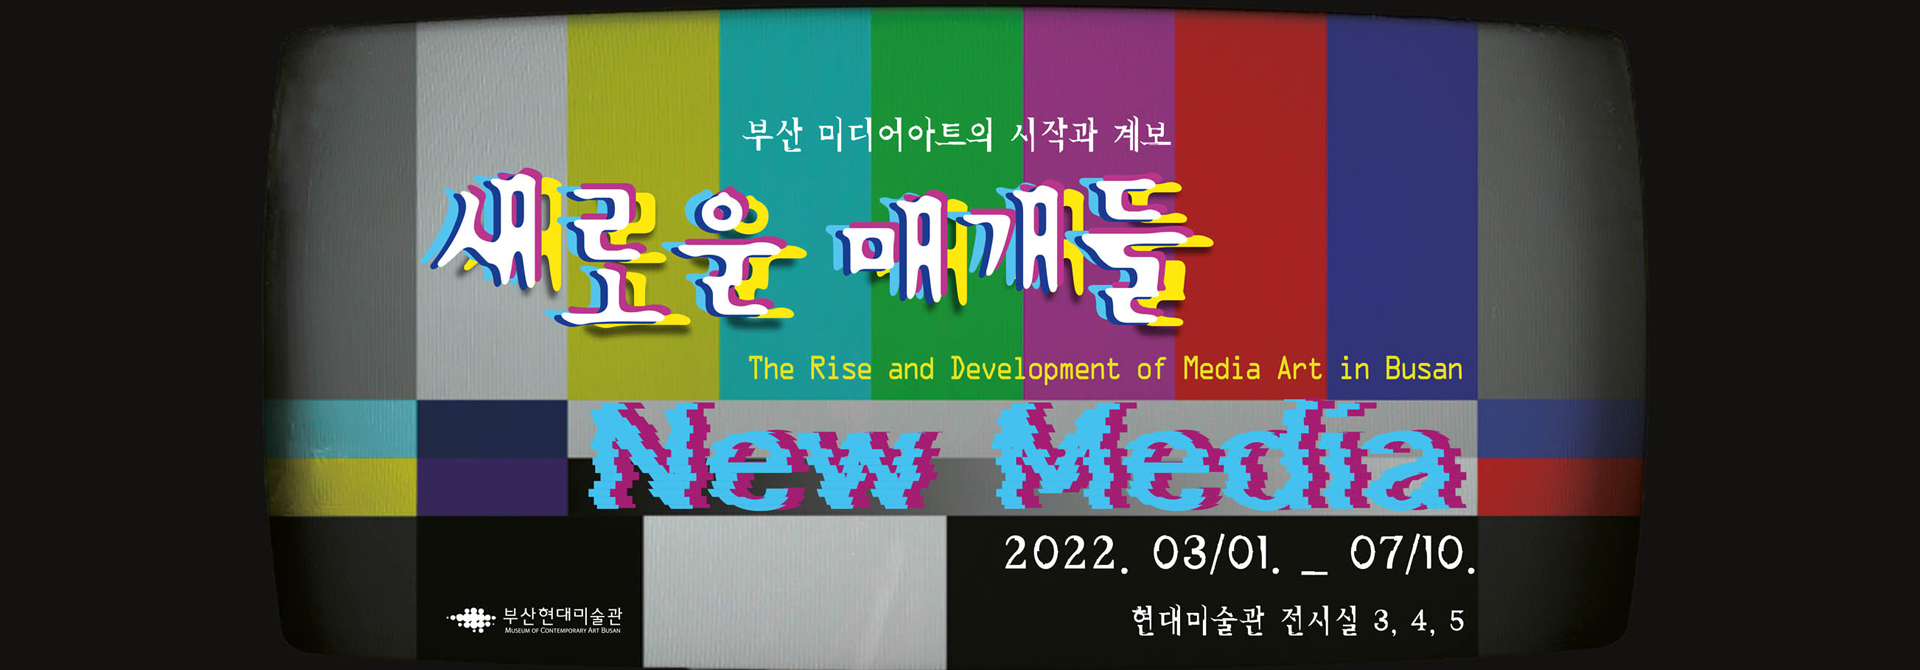 부산 미디어아트의 시작과 계보 새로운 매개들 The Rise and Development of Media Art in Busan New Media 2022. 03/01. _ 07/10. 현대미술관 전시실 3, 4, 5